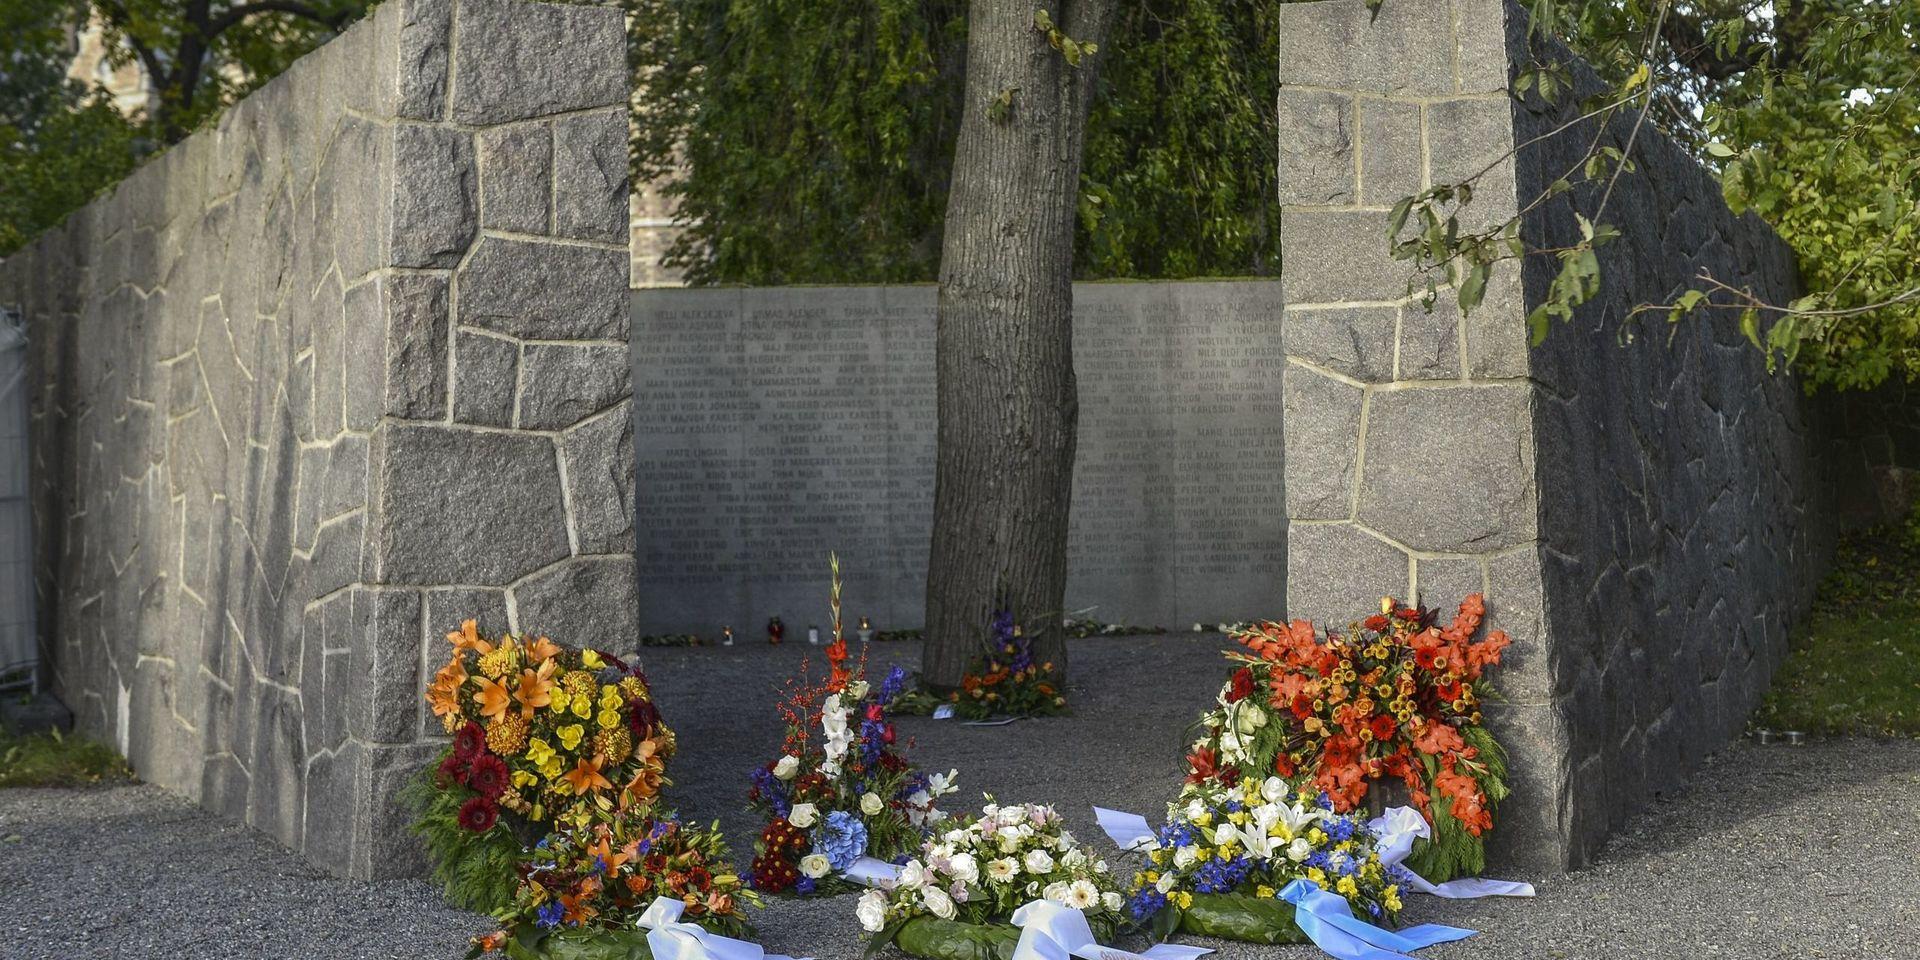 Det officiella svenska Estoniamonumentet ligger intill Galärvarvskyrkogården på Djurgården. Monumentet av den polske skulptören Mirosław Bałka invigdes 1997 på treårsdagen av katastrofen. Det är utfört i ljus granit och har inskriptioner med namn på offer. Arkivbild